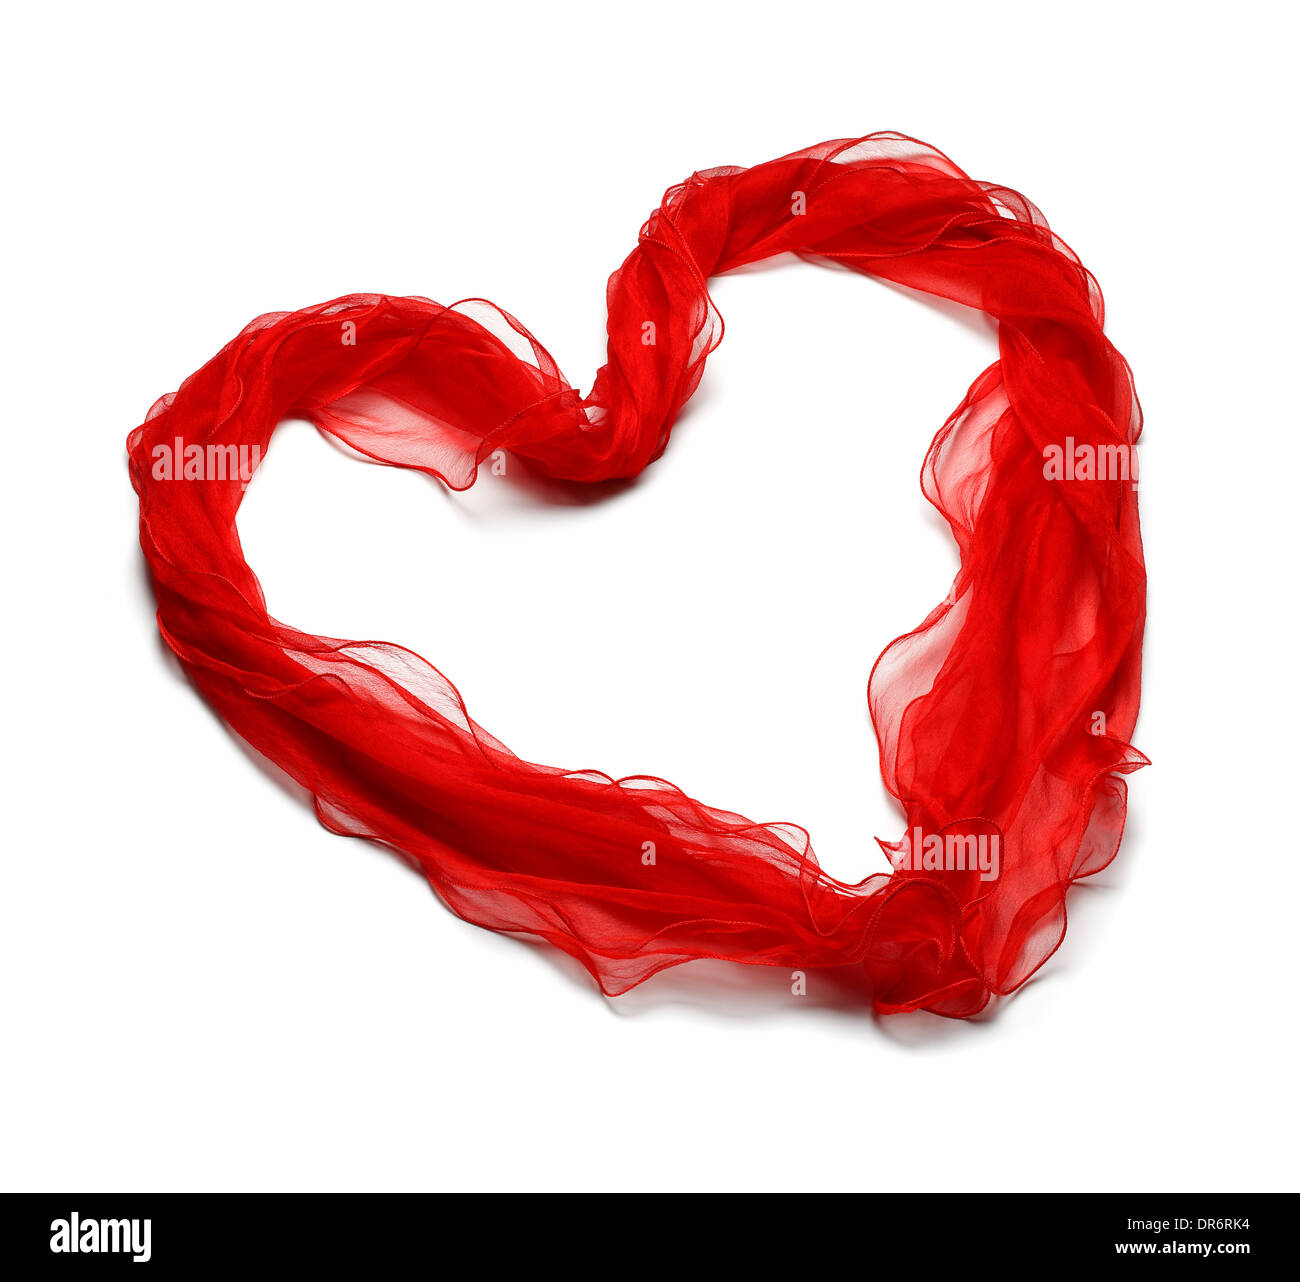 Valentine.coeur de satin rouge sur fond blanc Banque D'Images